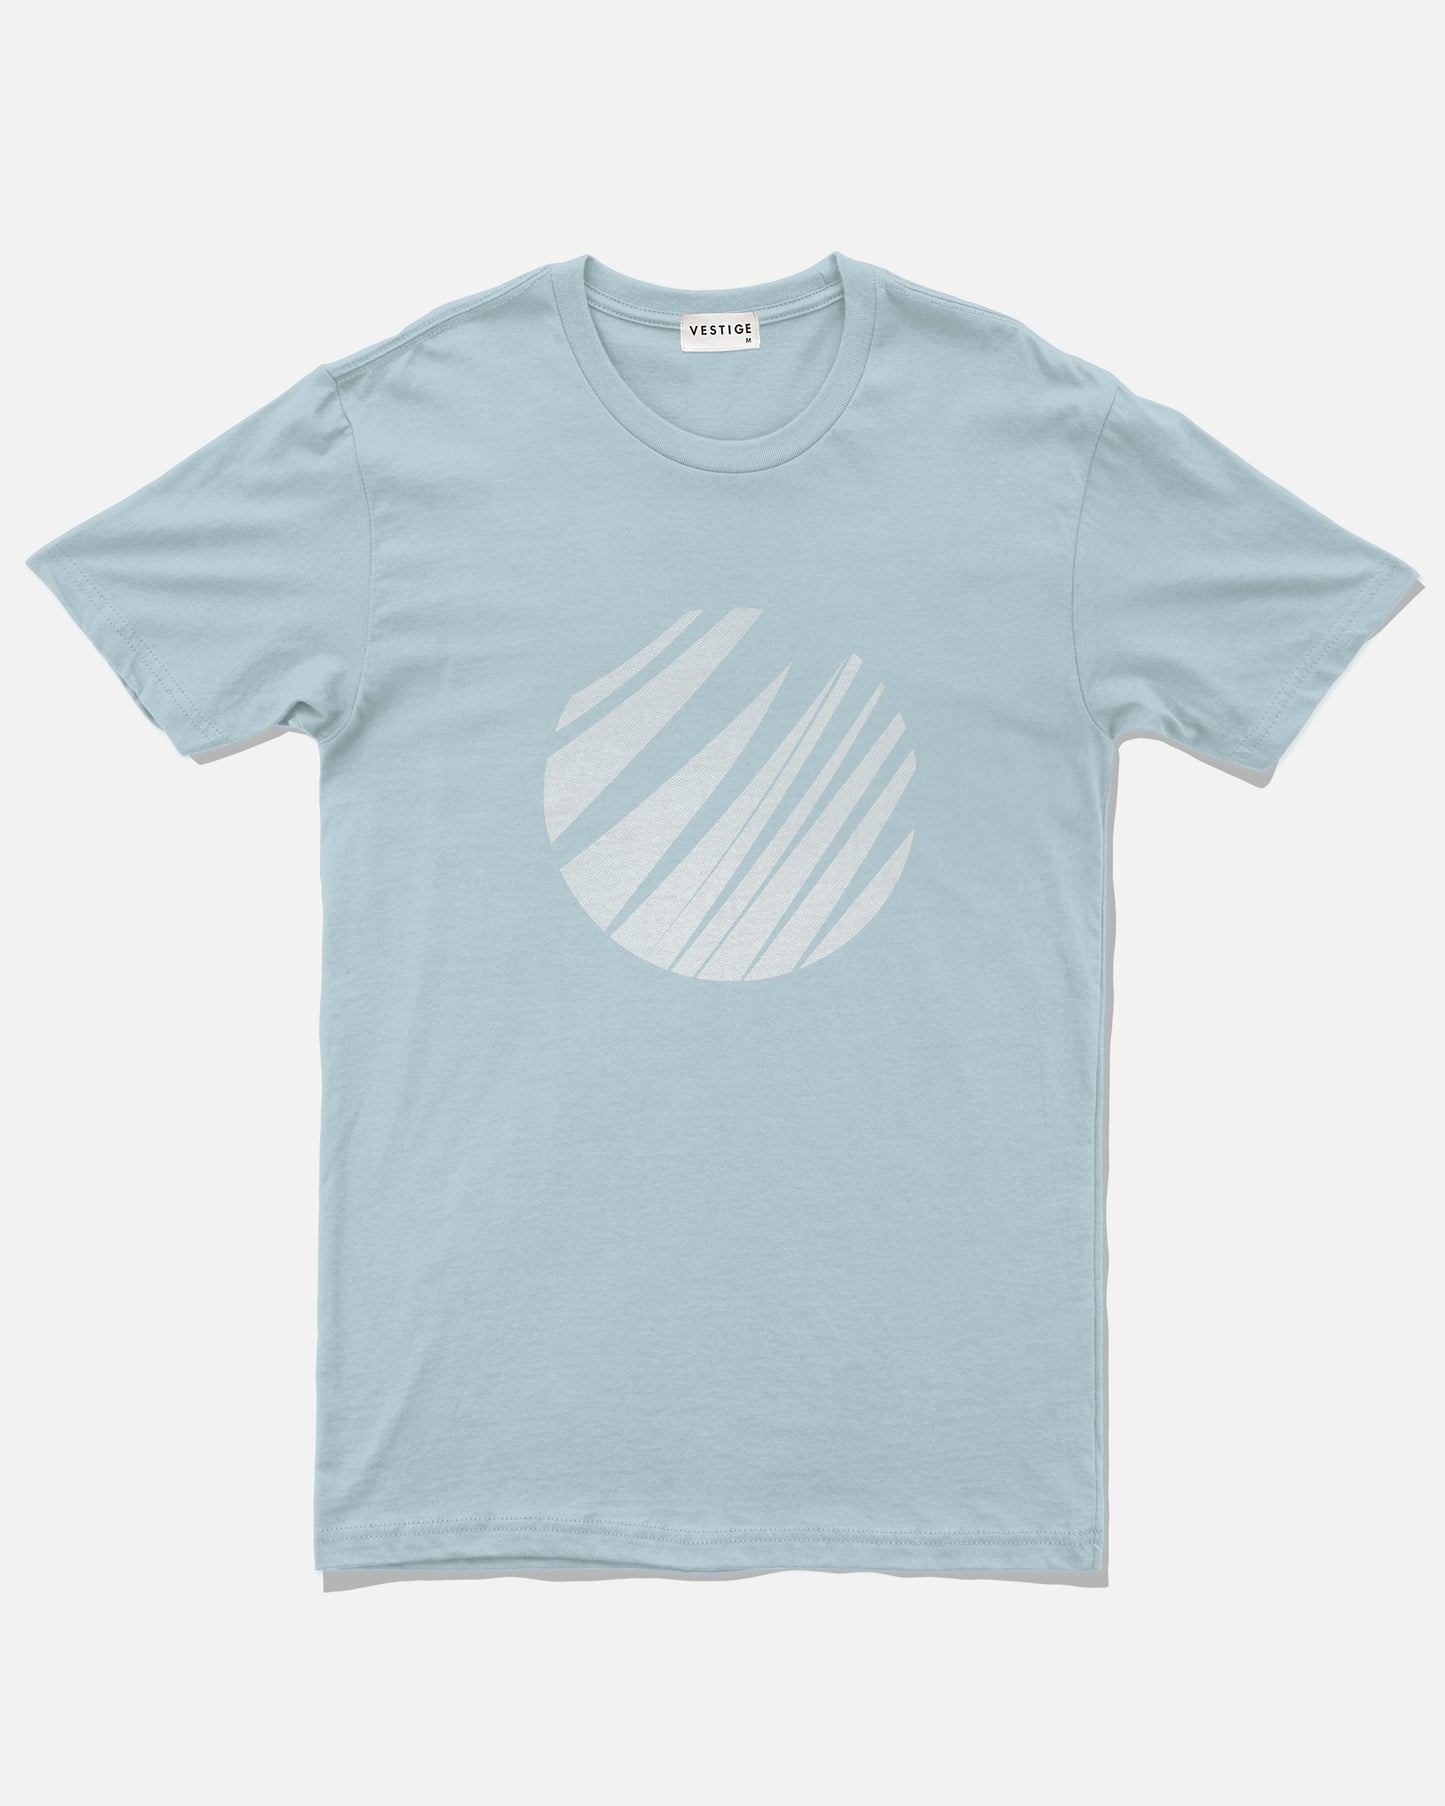 Palm Circle T-Shirt, Light Blue